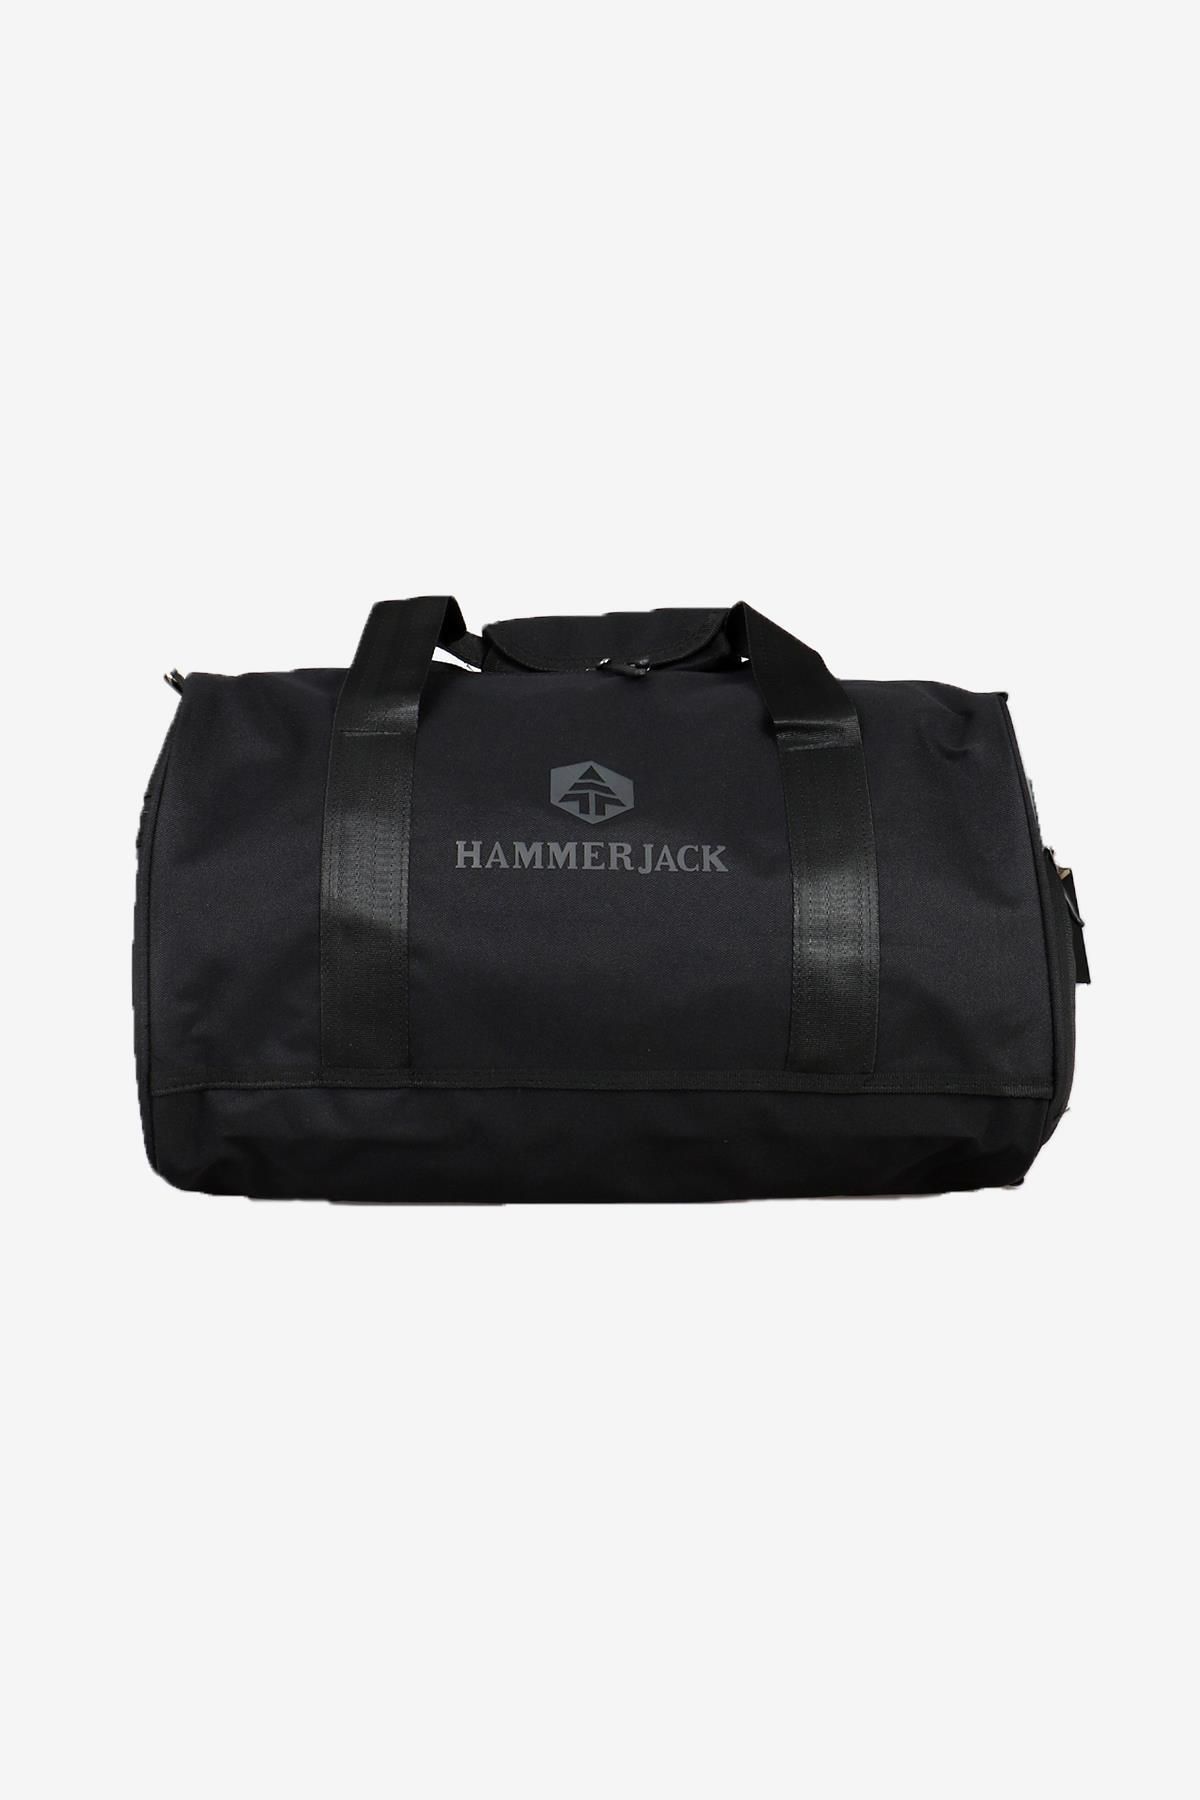 Hammer Jack کیف مسافرتی سیاه اورست 602 T113